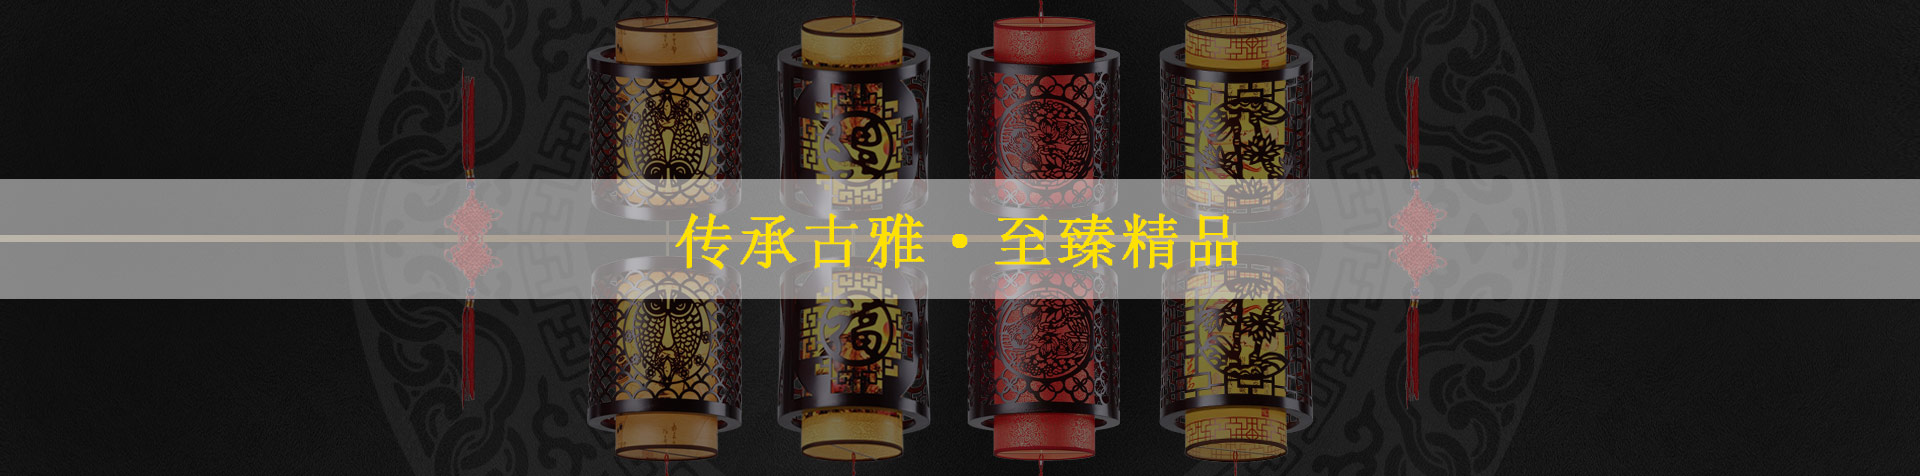 中式壁燈于中式風格空間綻放一抹華光雅韻